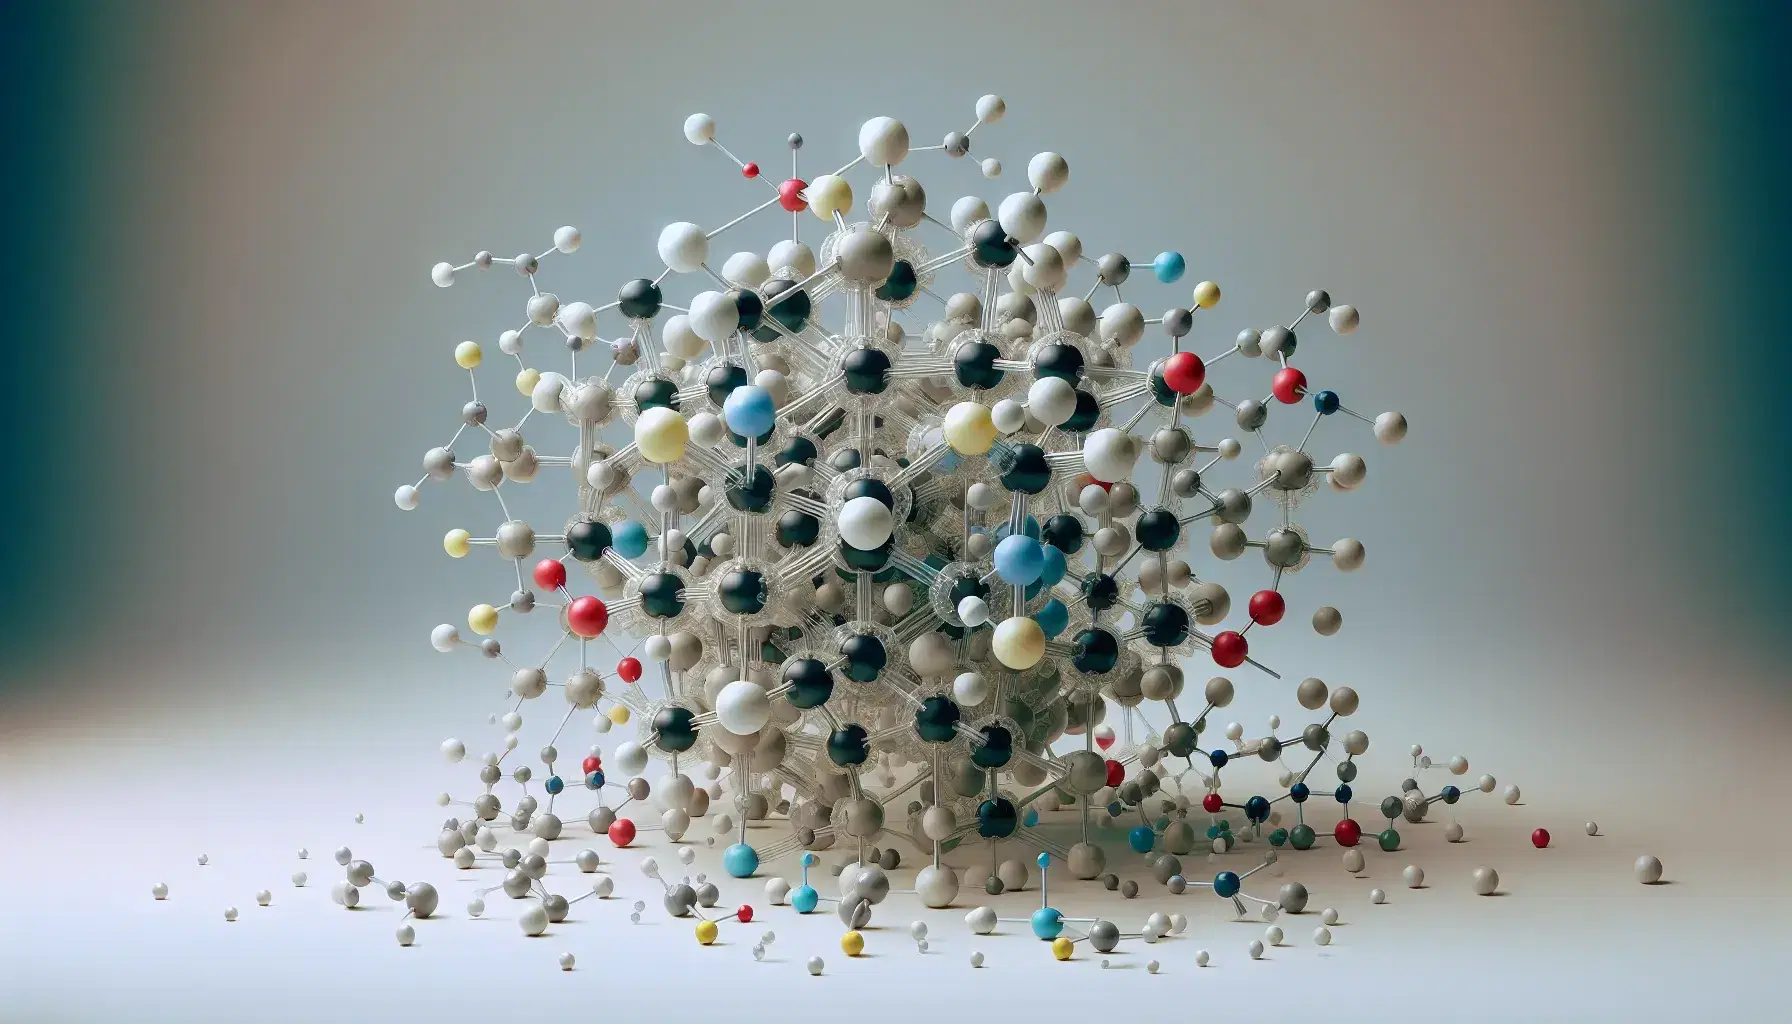 Modelos moleculares tridimensionales con esferas de colores y varillas que representan enlaces químicos, destacando una estructura central grande.